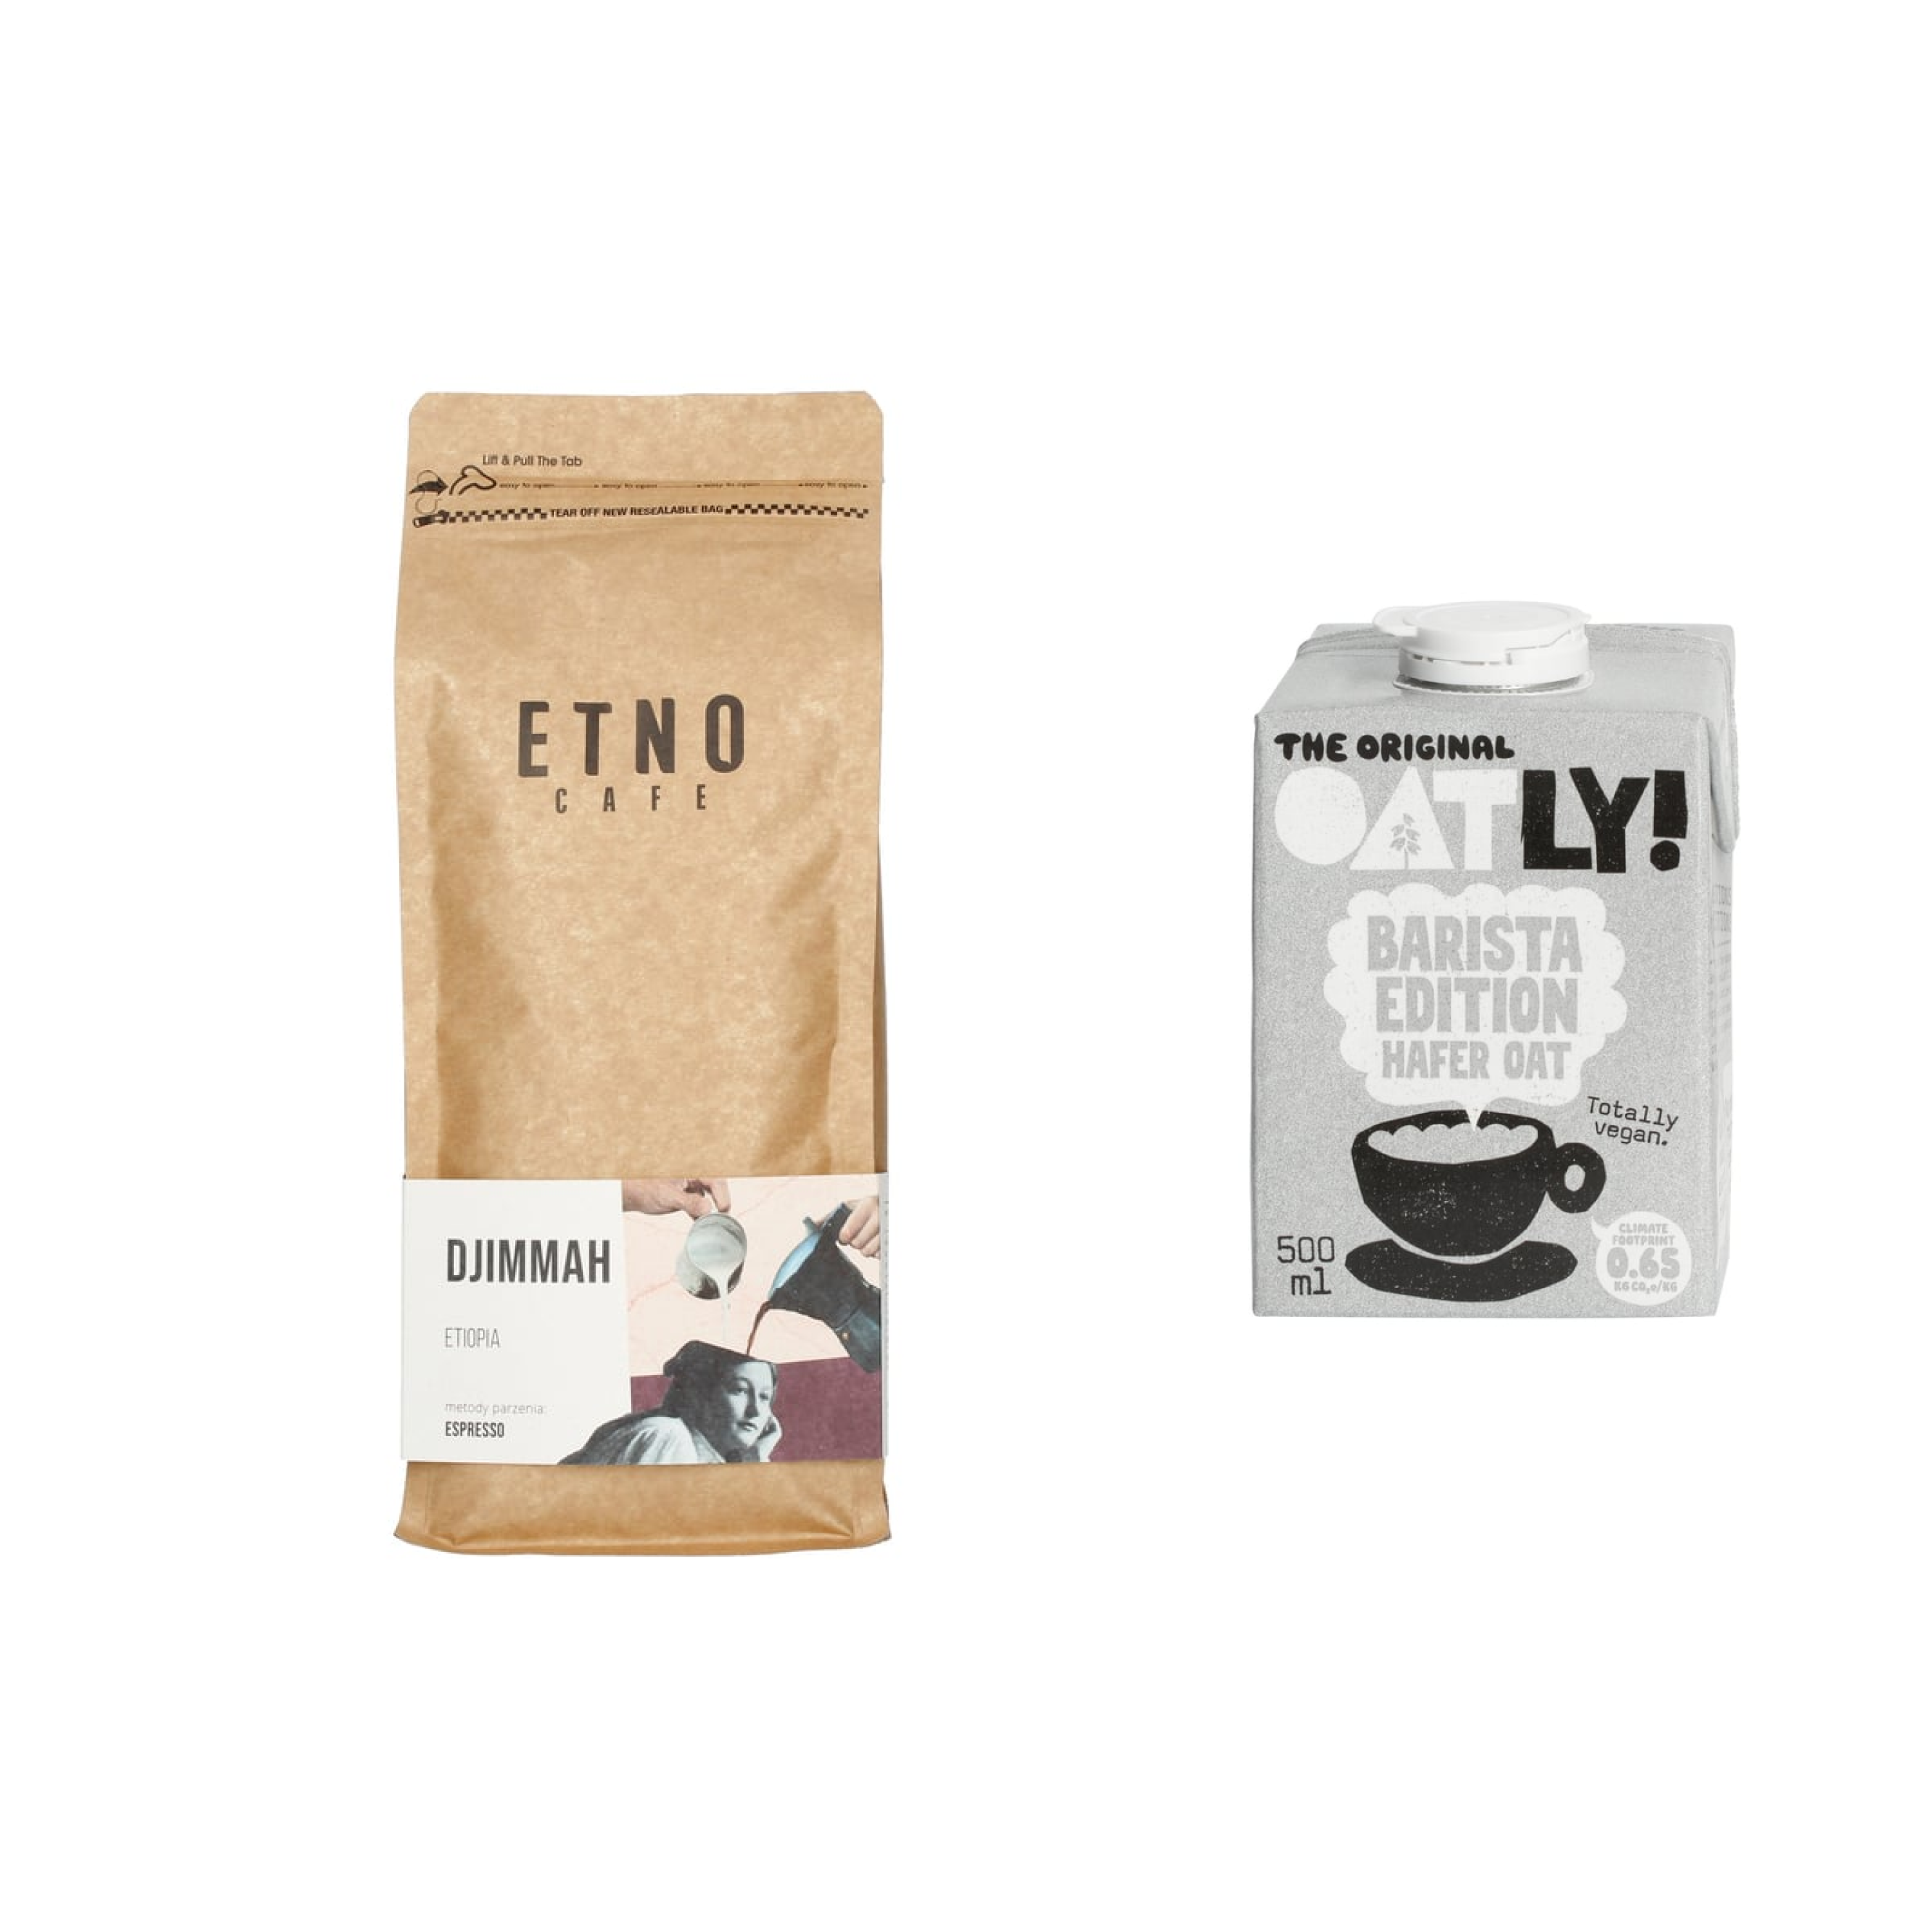 Zestaw Etno Cafe Etiopia Djimmah ESP 1kg + Oatly Barista 500ml